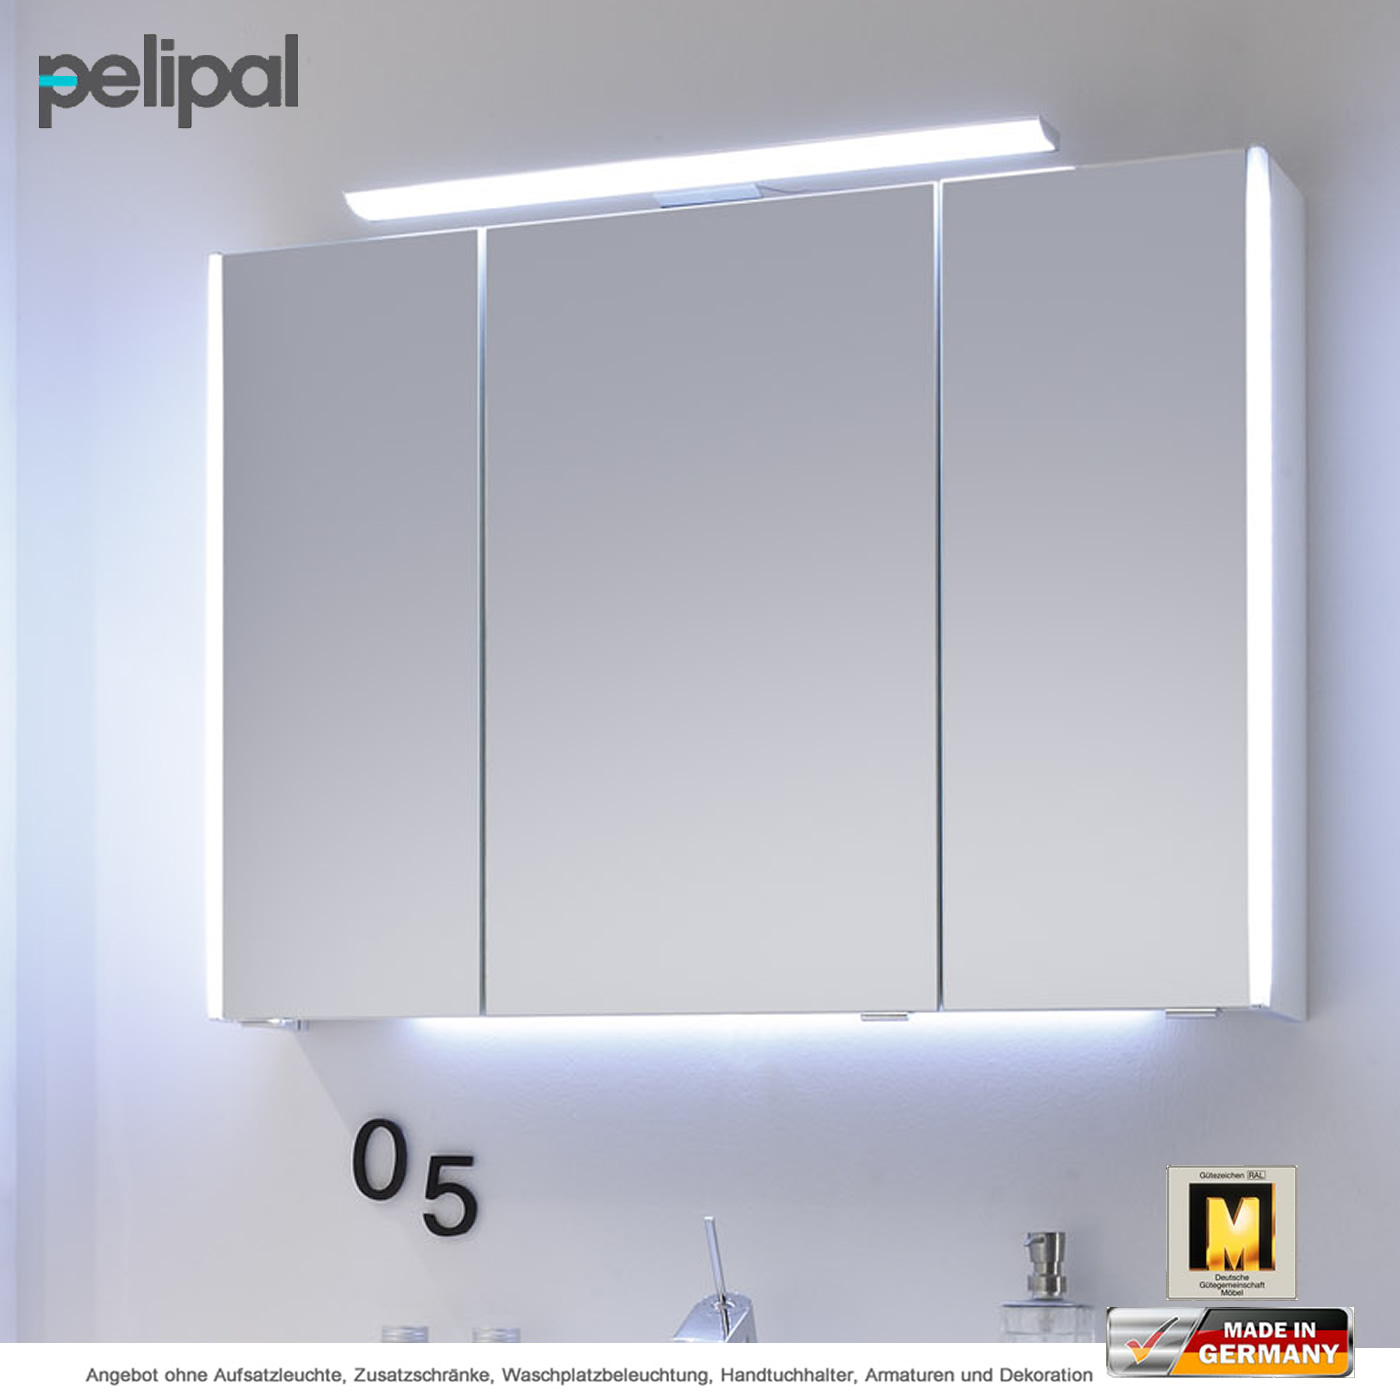 Pelipal Balto Spiegelschrank 92 cm mit 3 Türen | Impulsbad